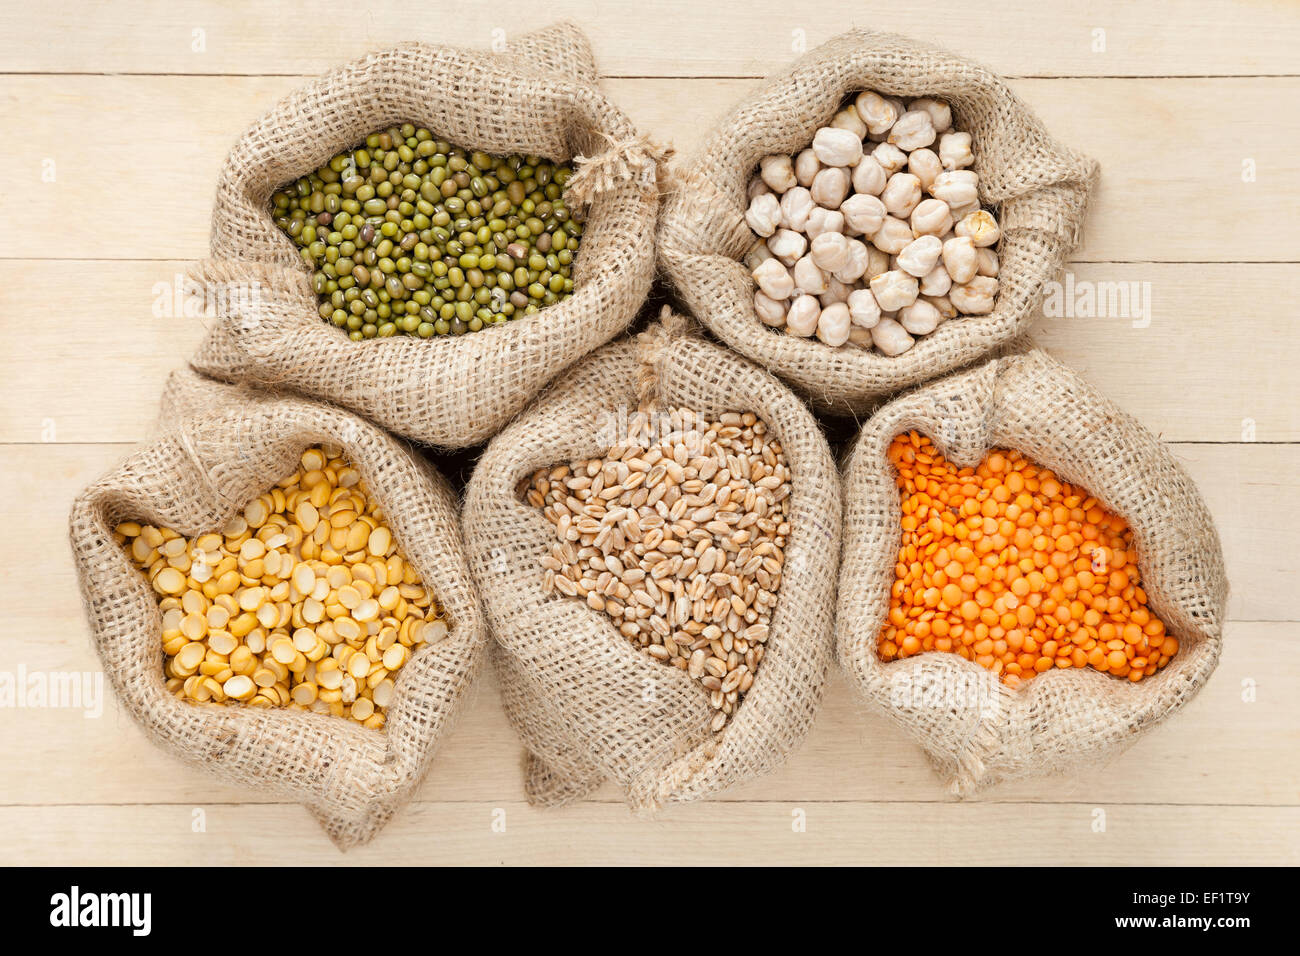 Sacchetti di Hesse con grani di cereale: di lenticchie rosse, piselli, ceci, frumento e verde mung sul tavolo di legno, vista dall'alto Foto Stock